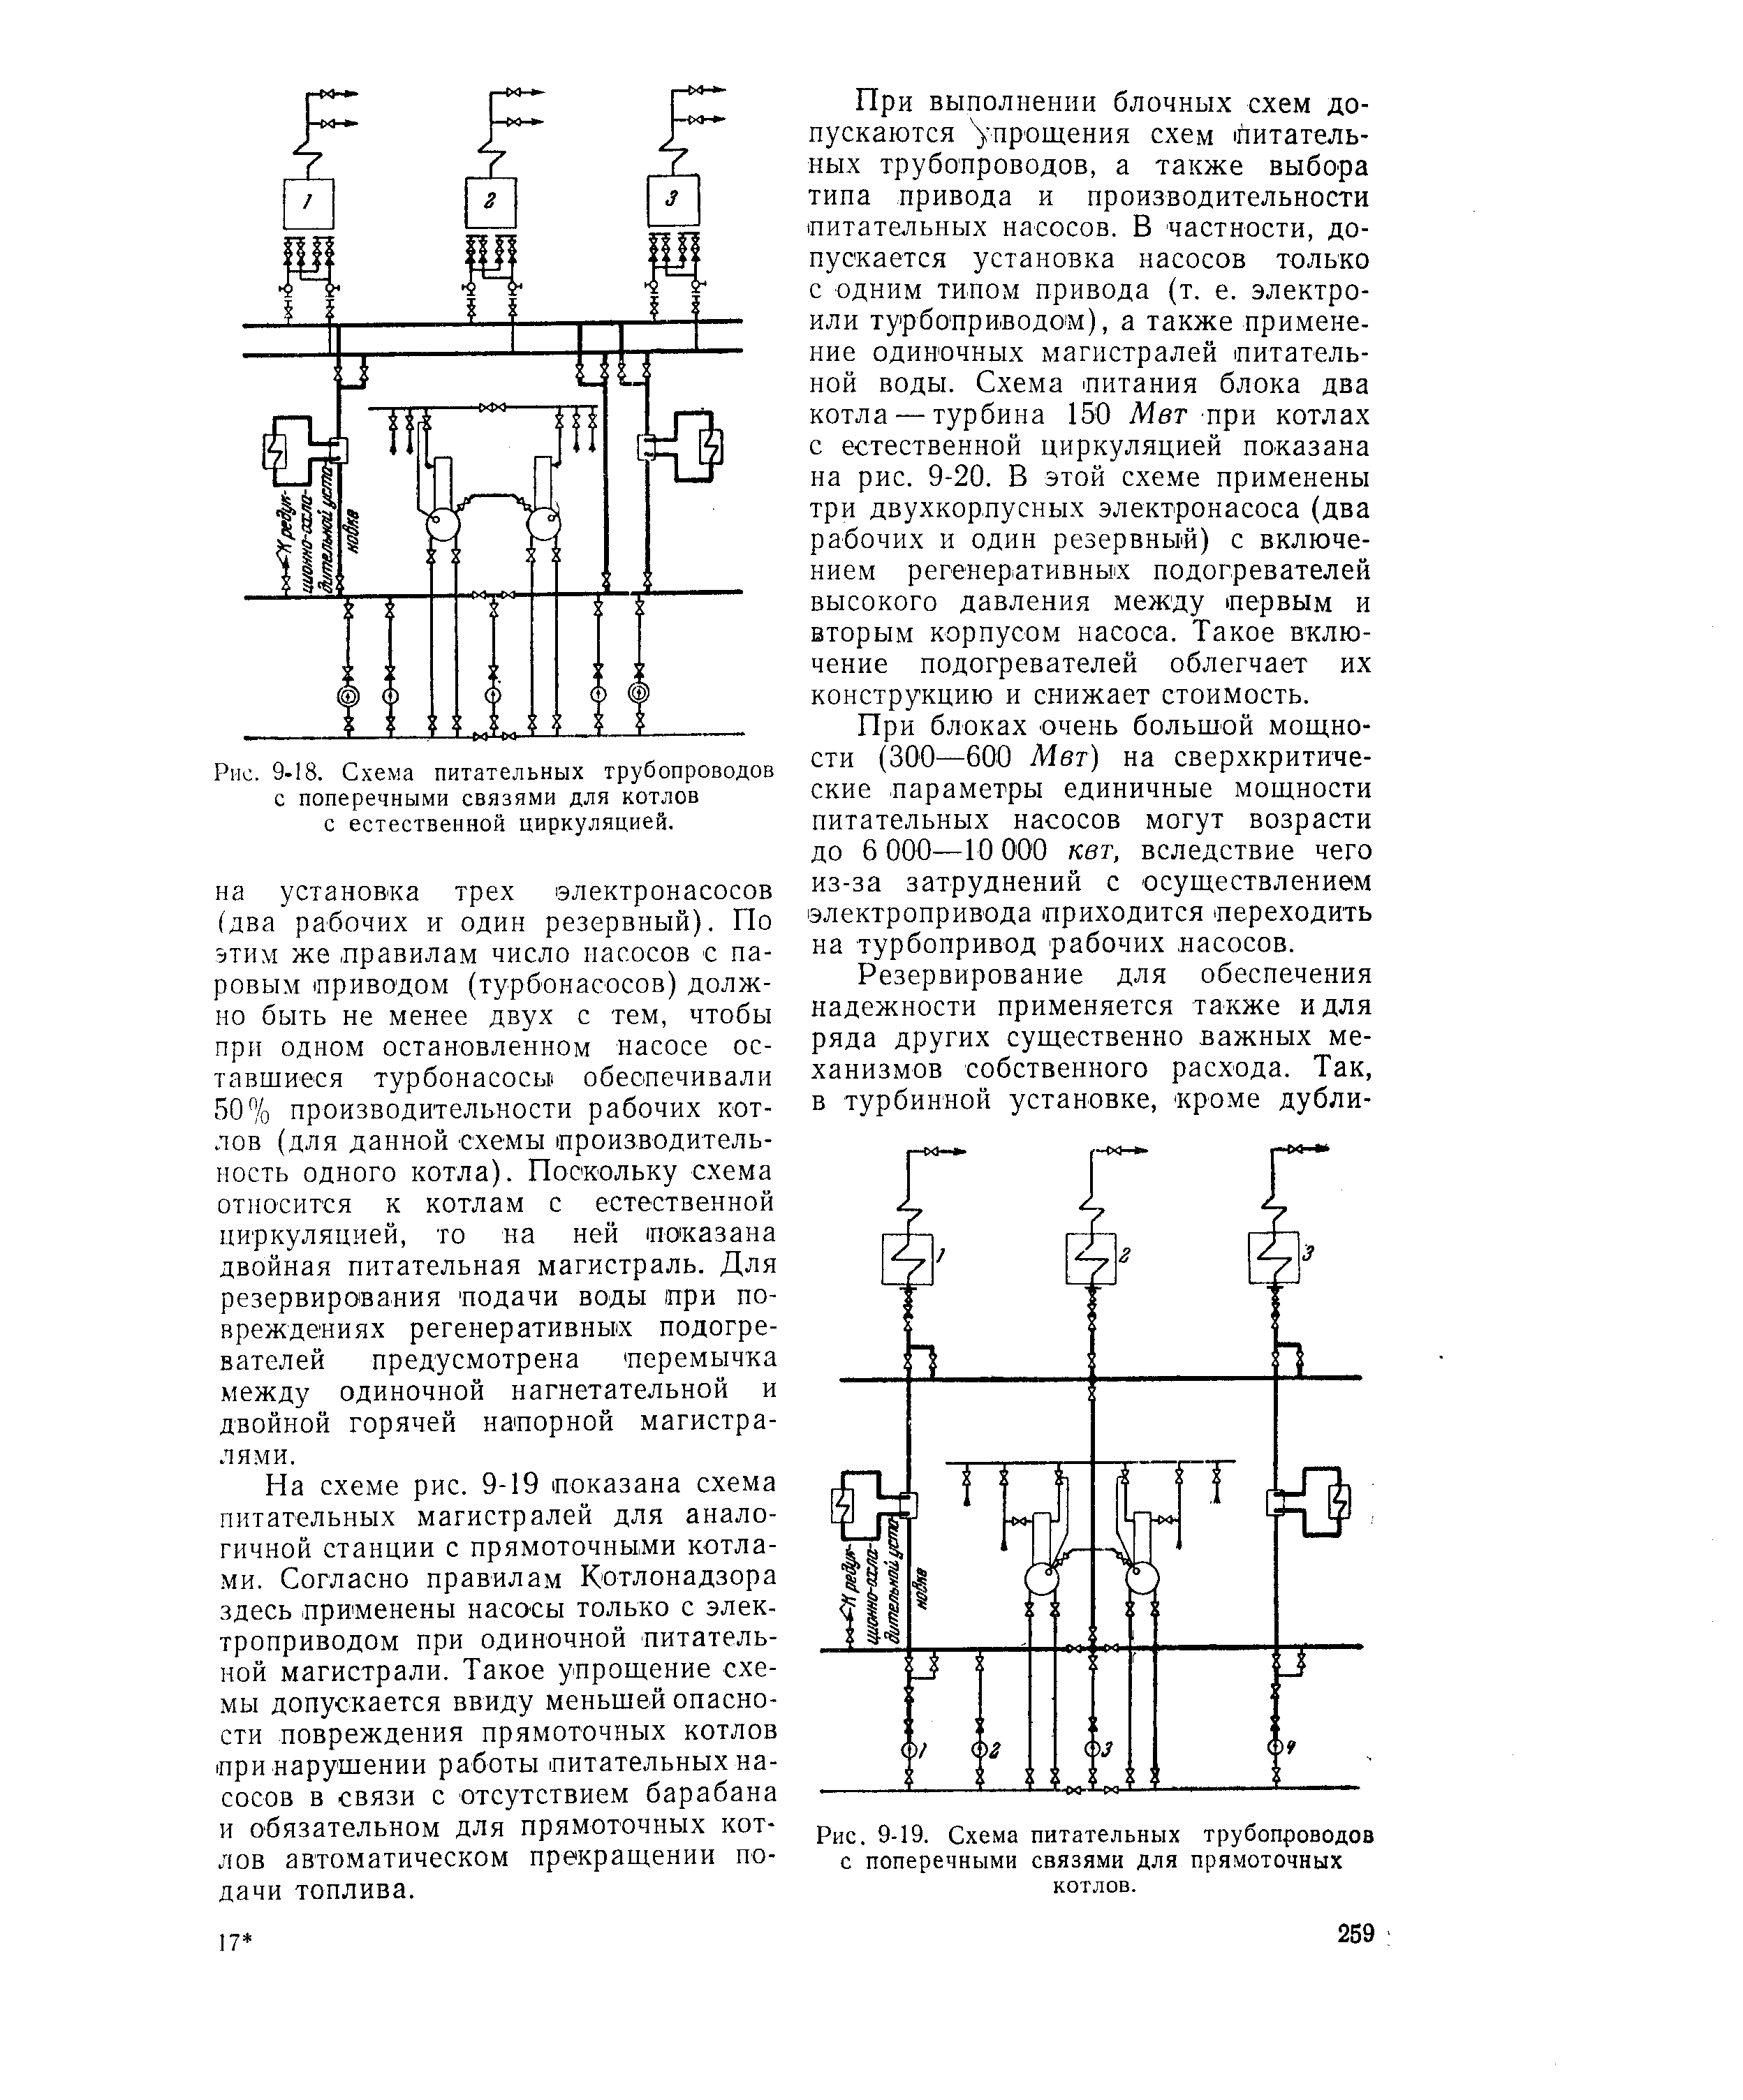 Рис. 9-19. Схема питательных трубопроводов с поперечными связями для прямоточных котлов.
